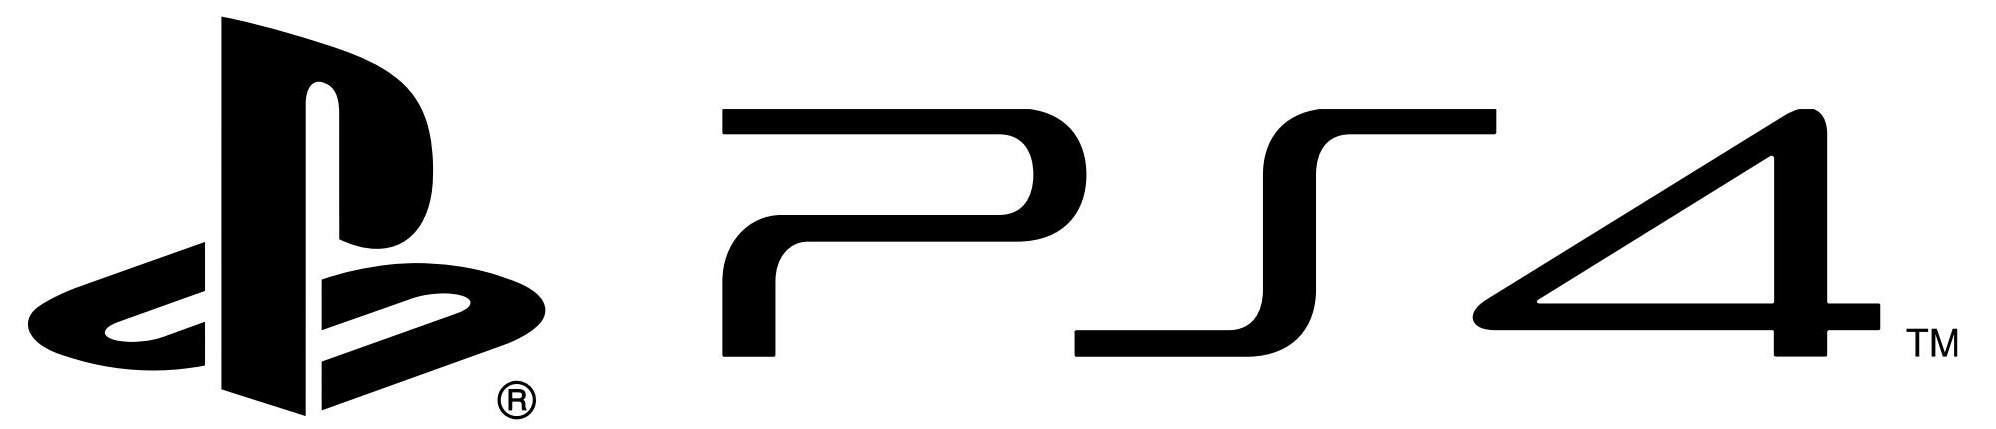 PS4 PlayStation 4 logo